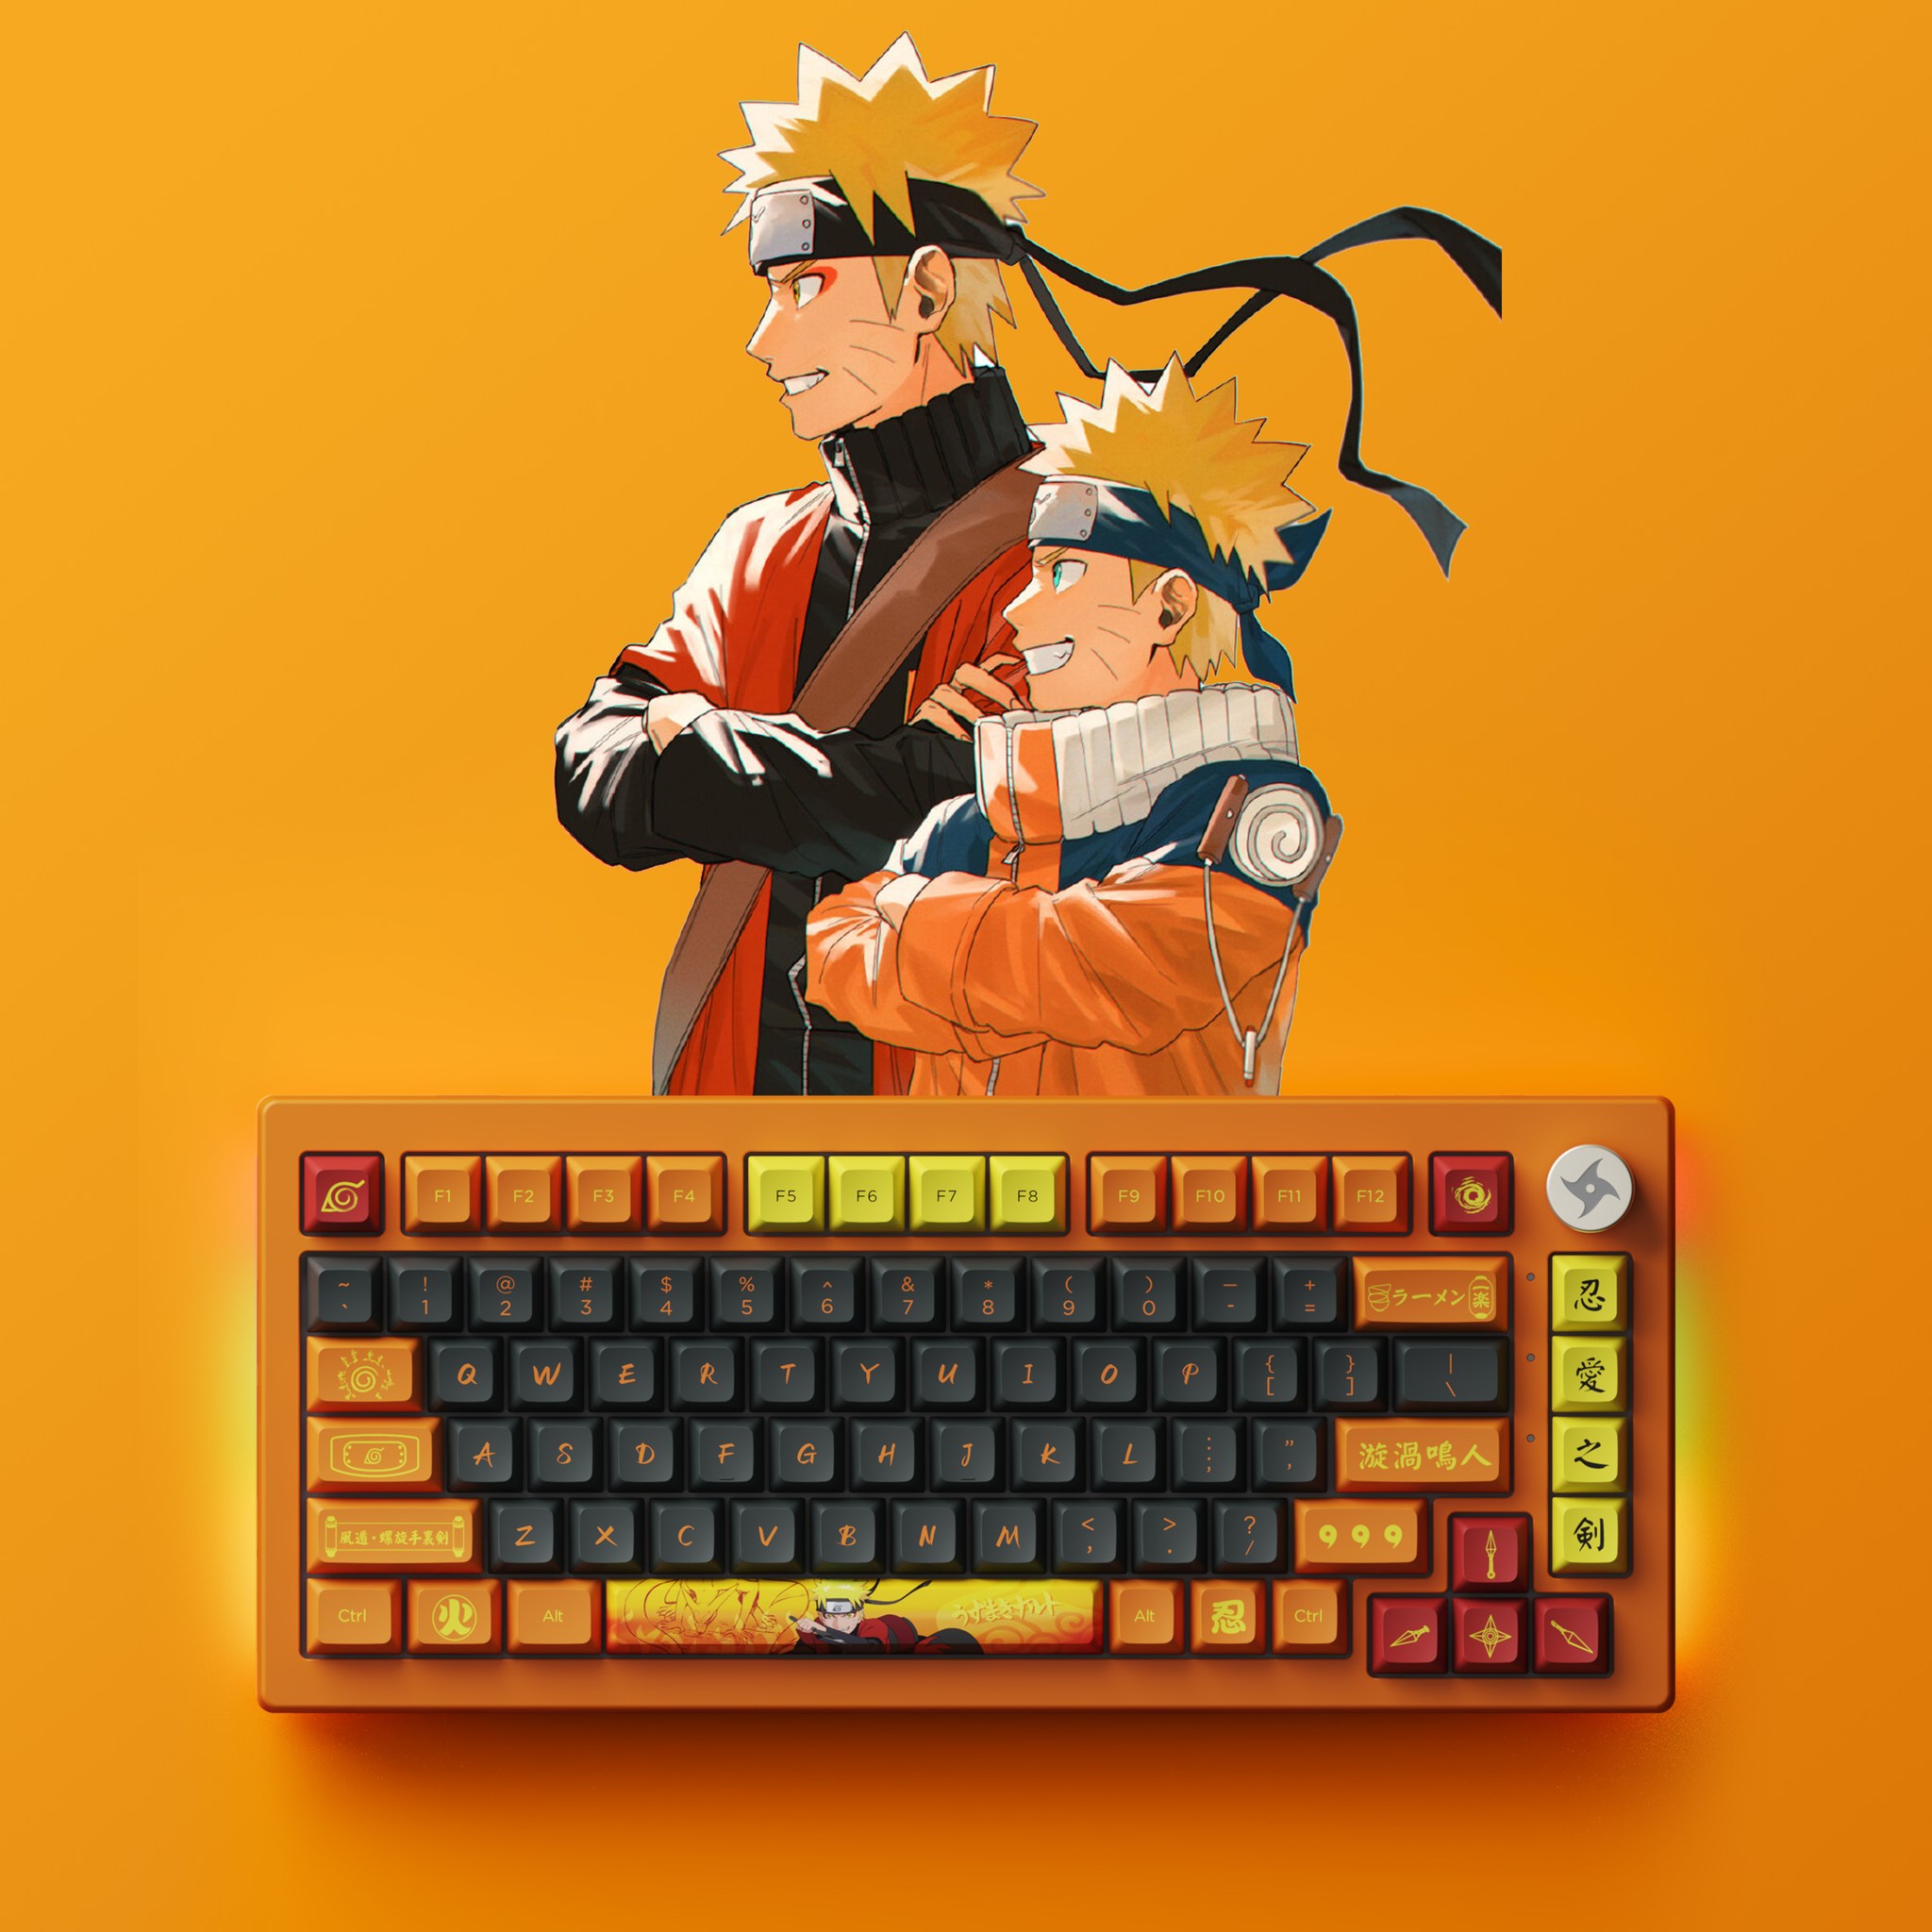 Bàn phím máy tính AKKO 5075B Plus Naruto_Mới, hàng chính hãng | Lazada.vn